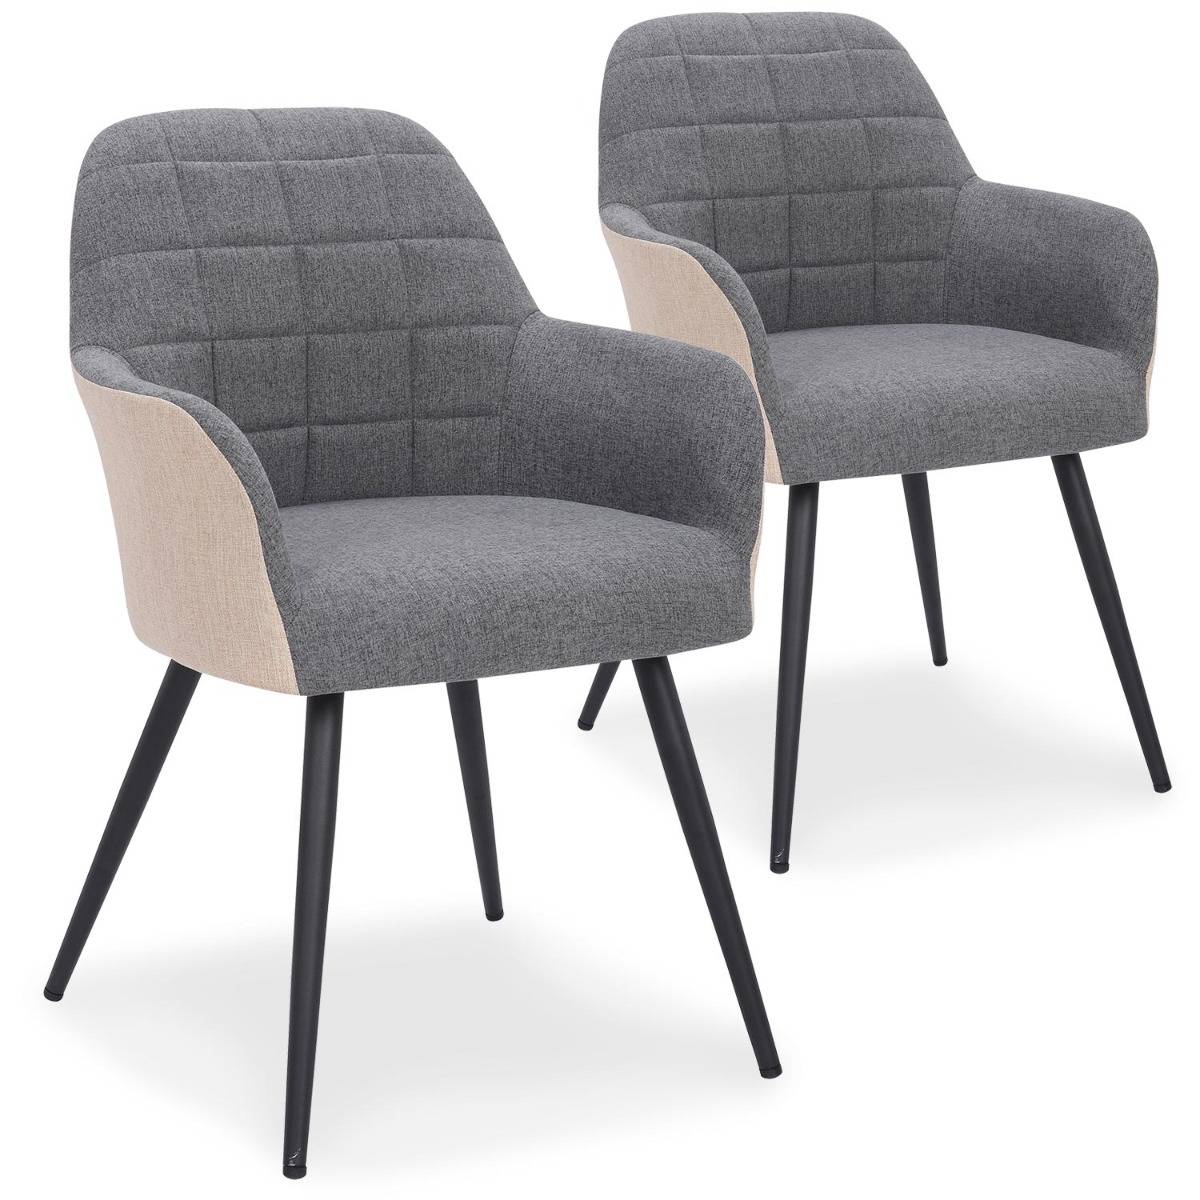 Unika Set mit 2 Stühlen / Sesseln mit Stoffbezug Grau & Beige